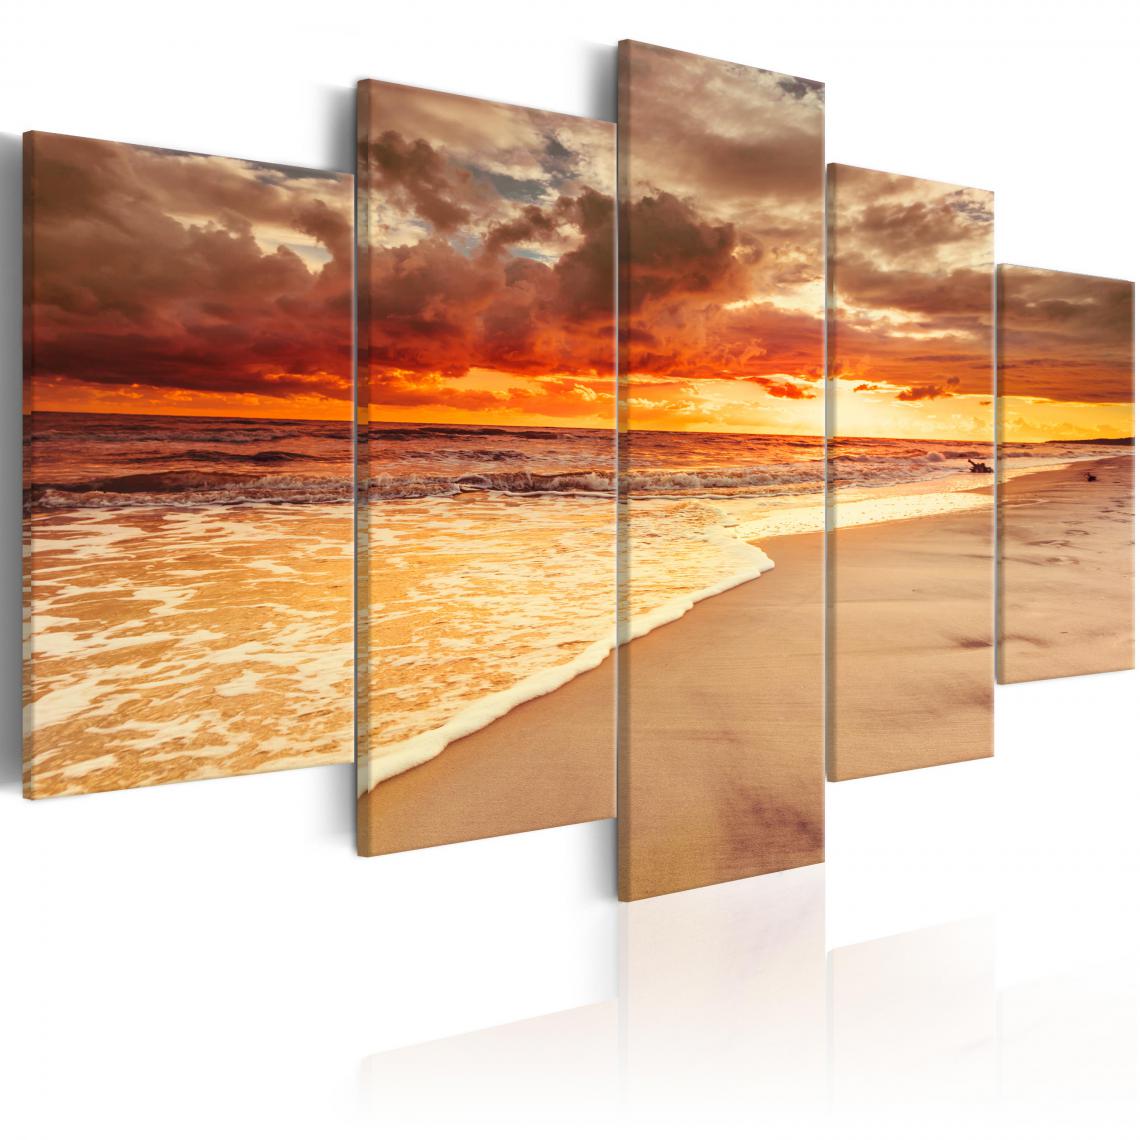 Decoshop26 - Tableau sur toile en 5 panneaux décoration murale image imprimée cadre en bois à suspendre Mer : magnifique coucher de soleil 200x100 cm 11_0006578 - Tableaux, peintures